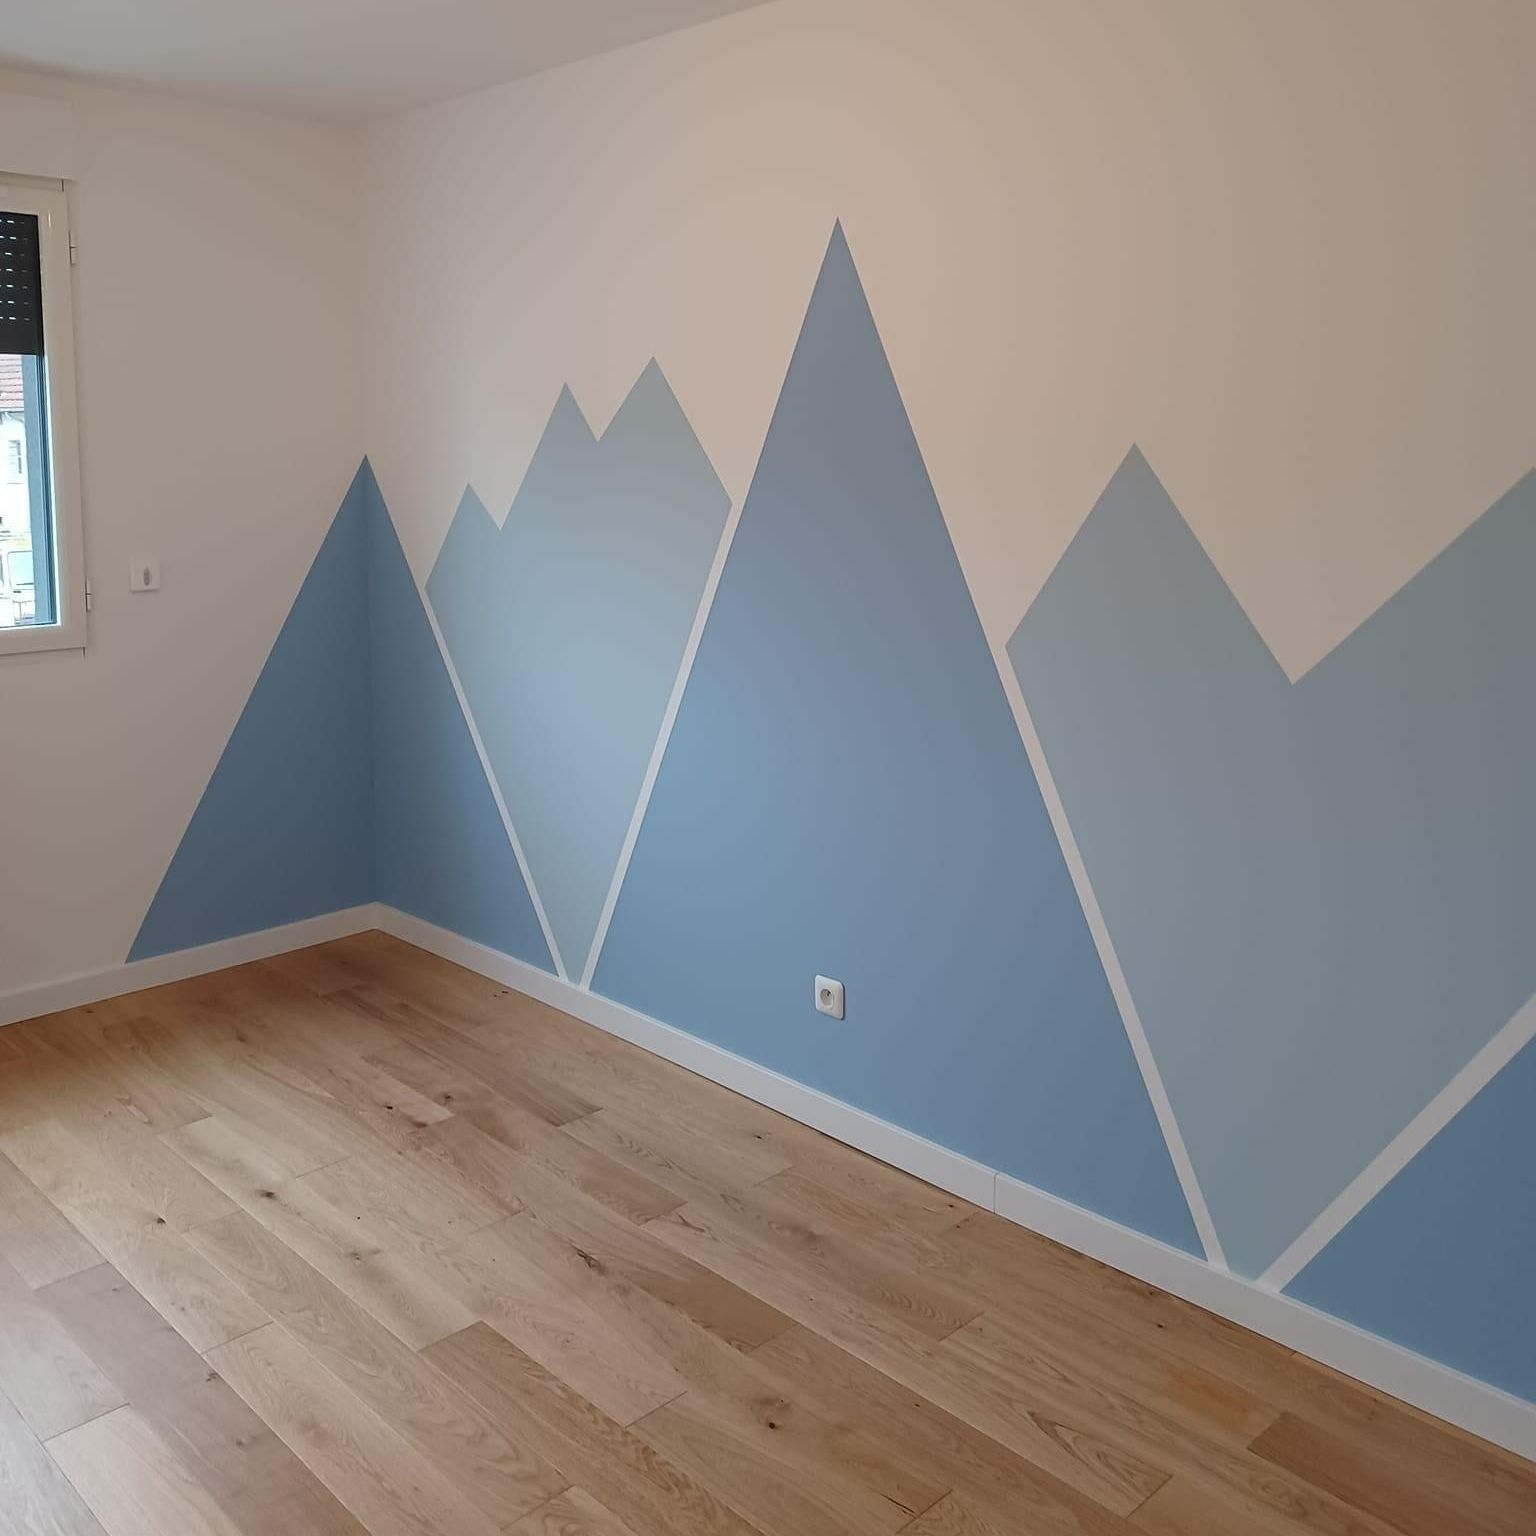 Mur peint avec des formes géométriques avec des nuances de bleu